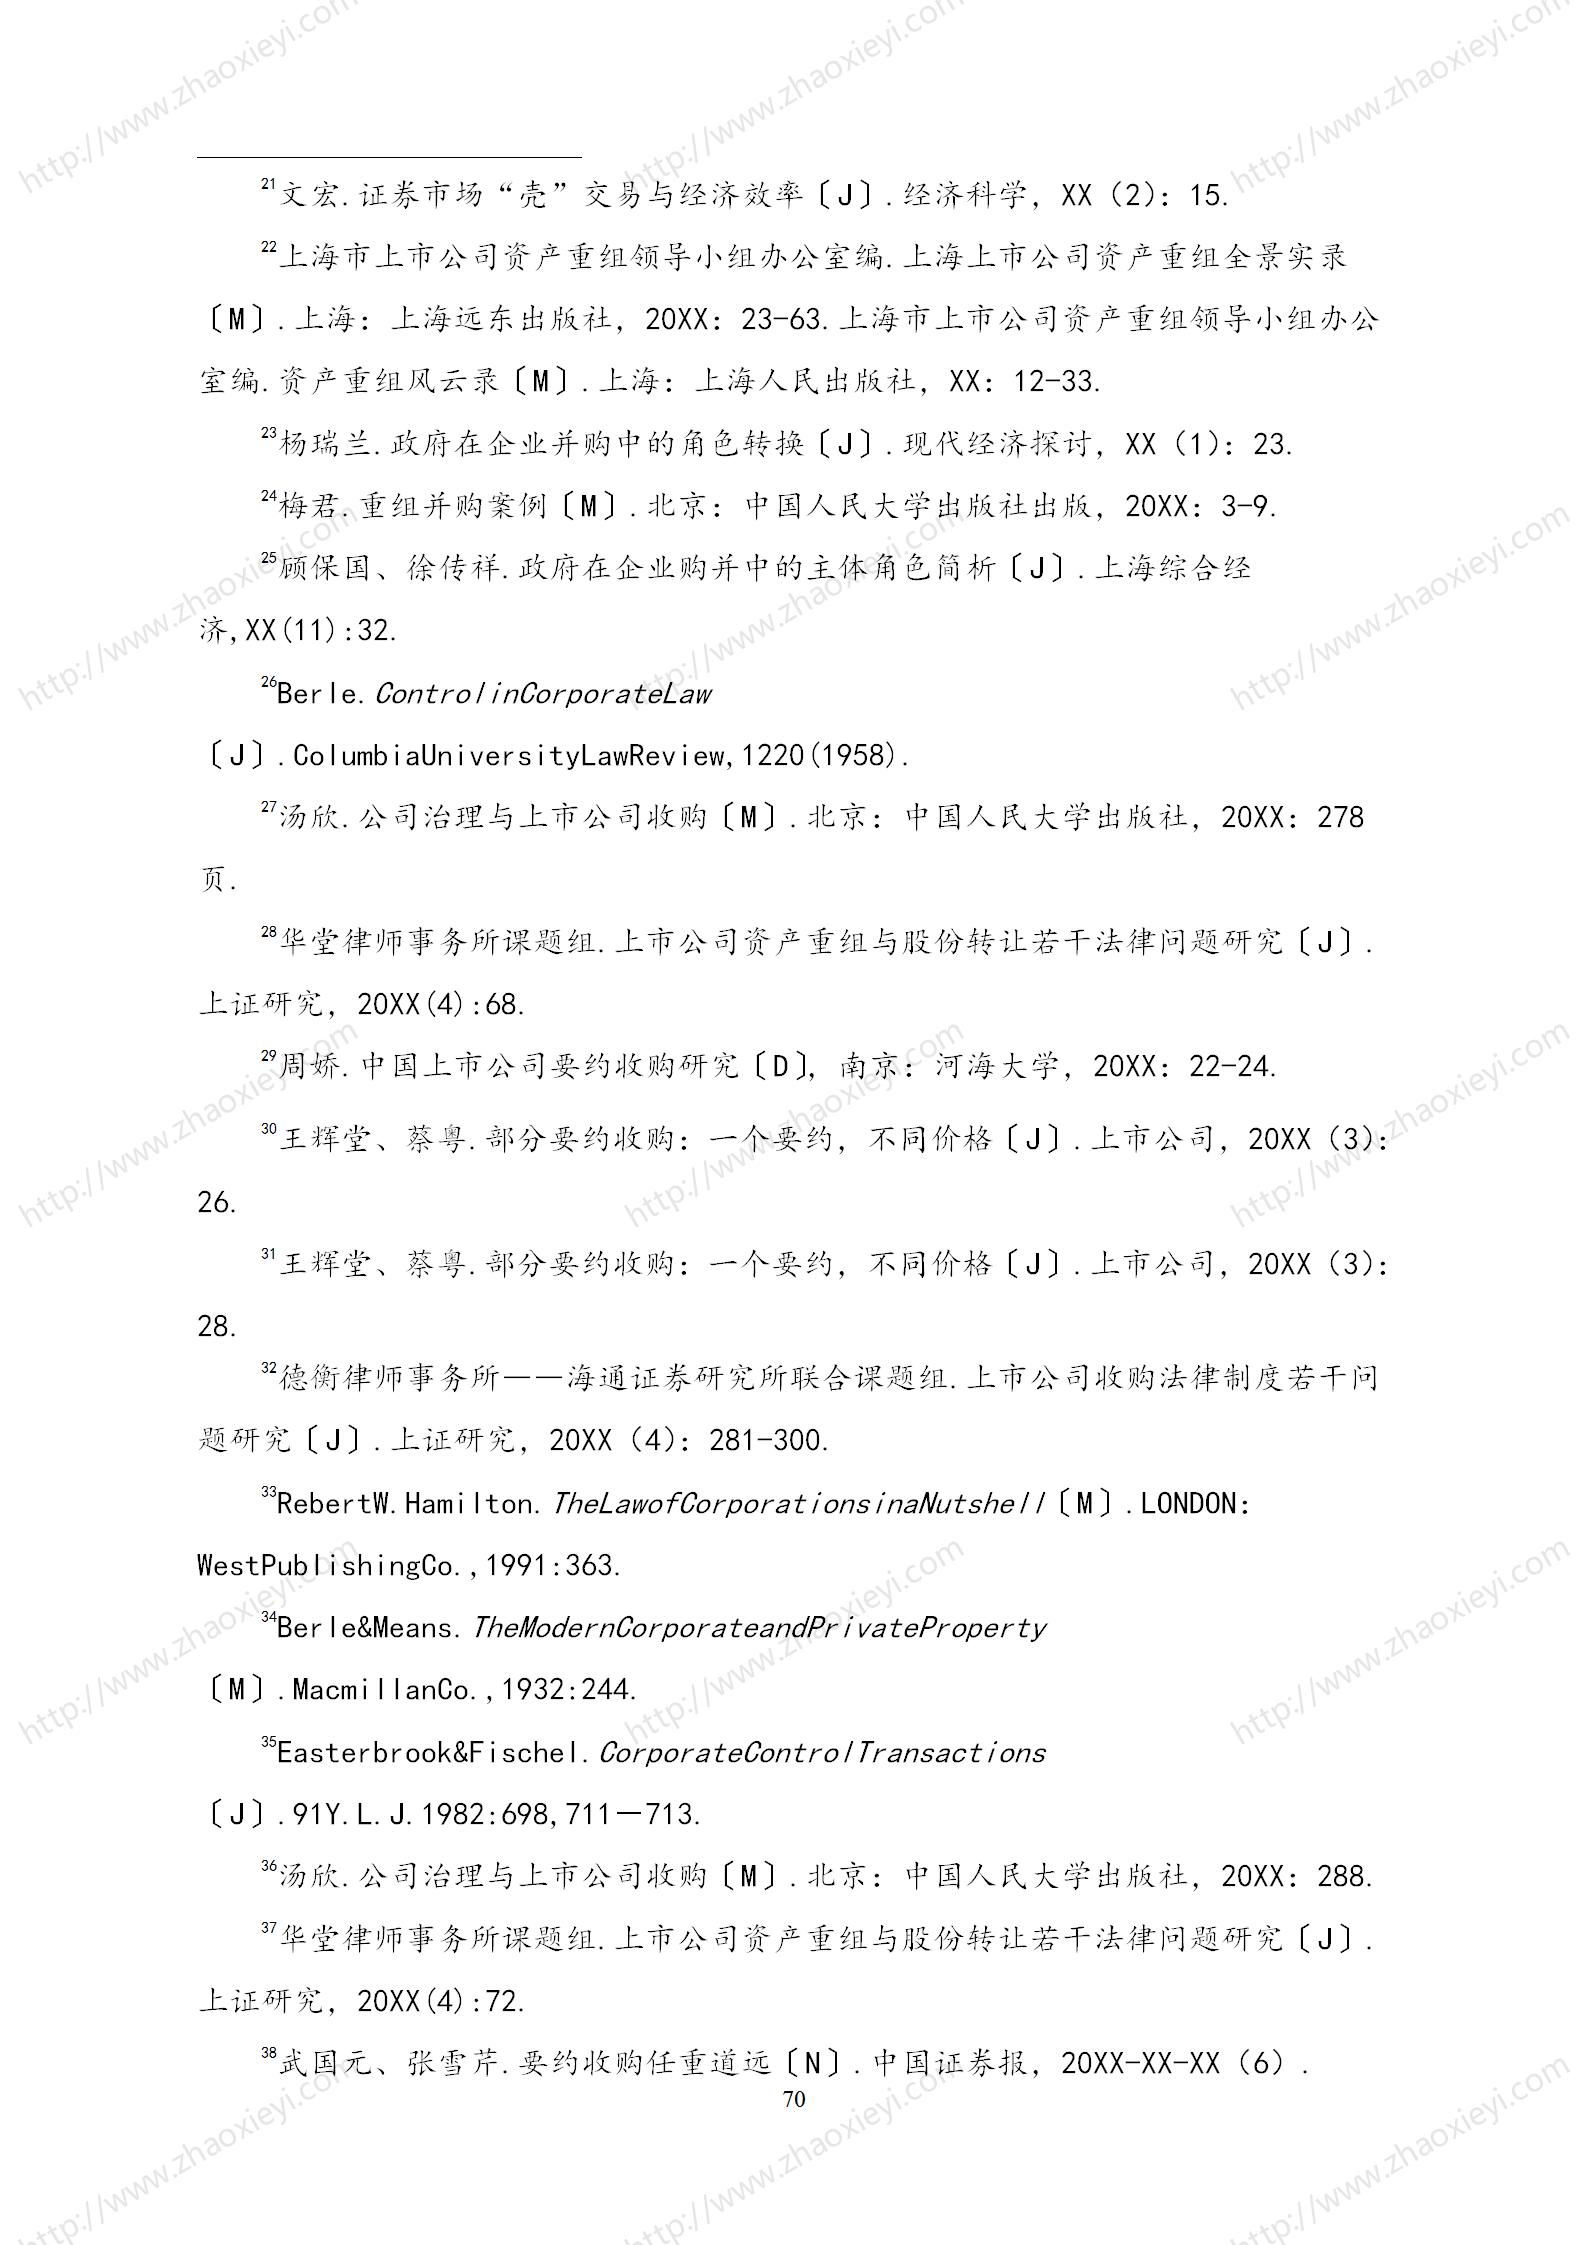 中国上市公司并购重组的模式研究_41.jpg